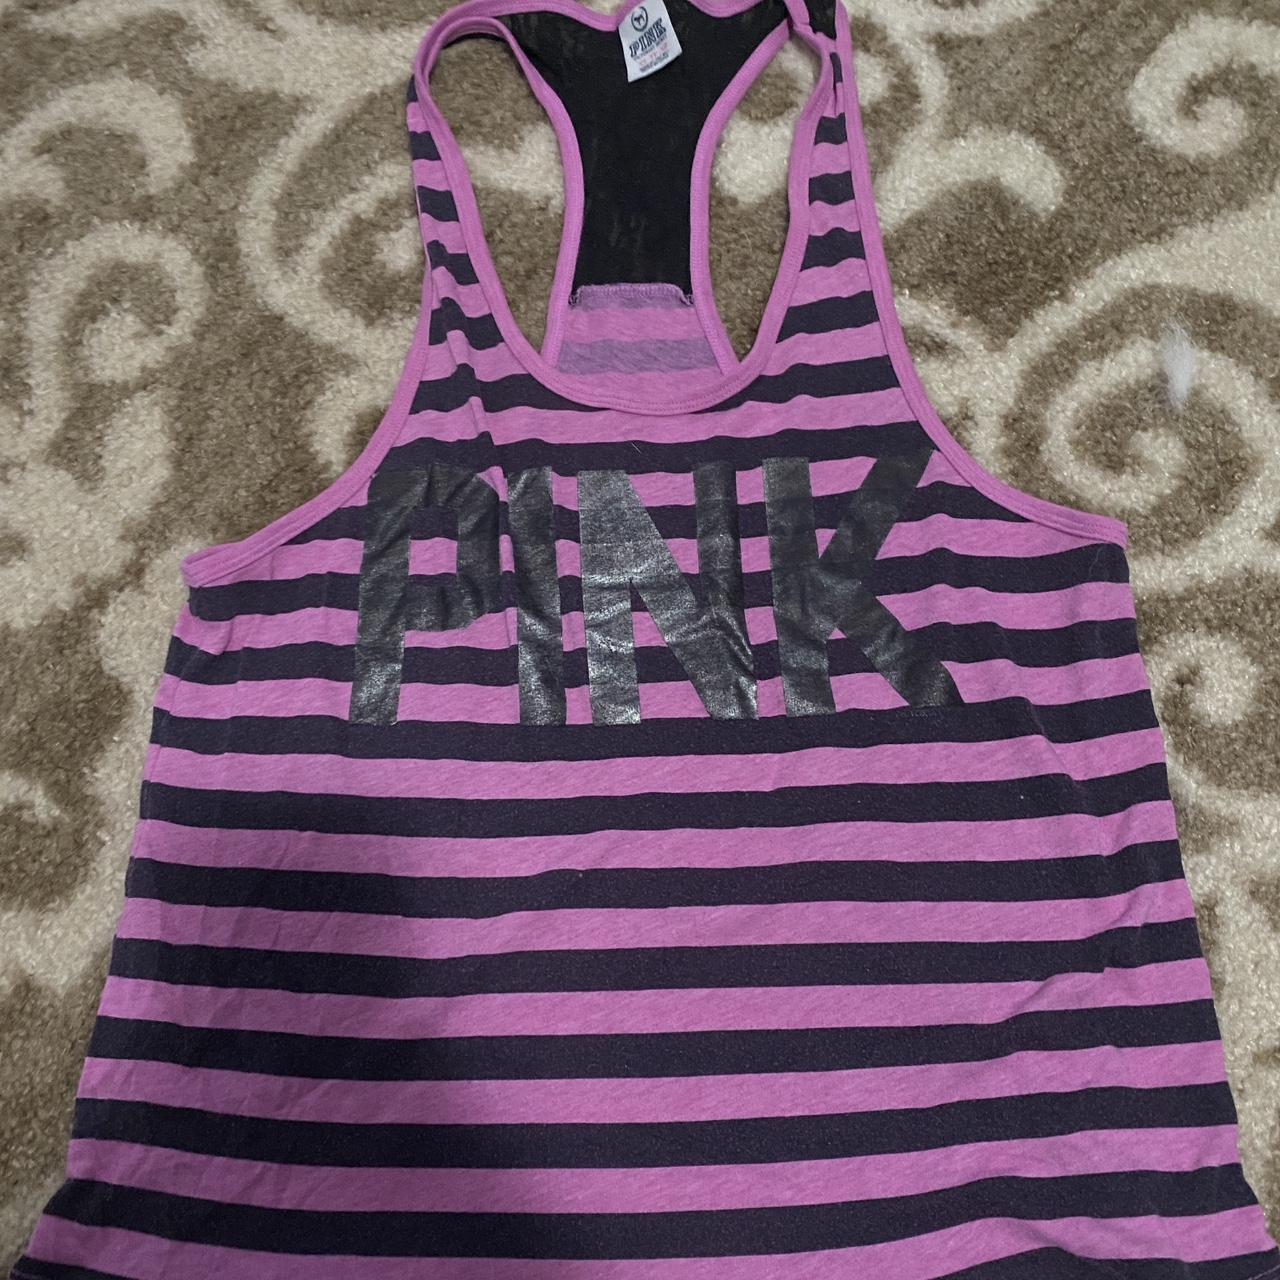 Vintage Victoria Secret Pink striped tank top -fits - Depop